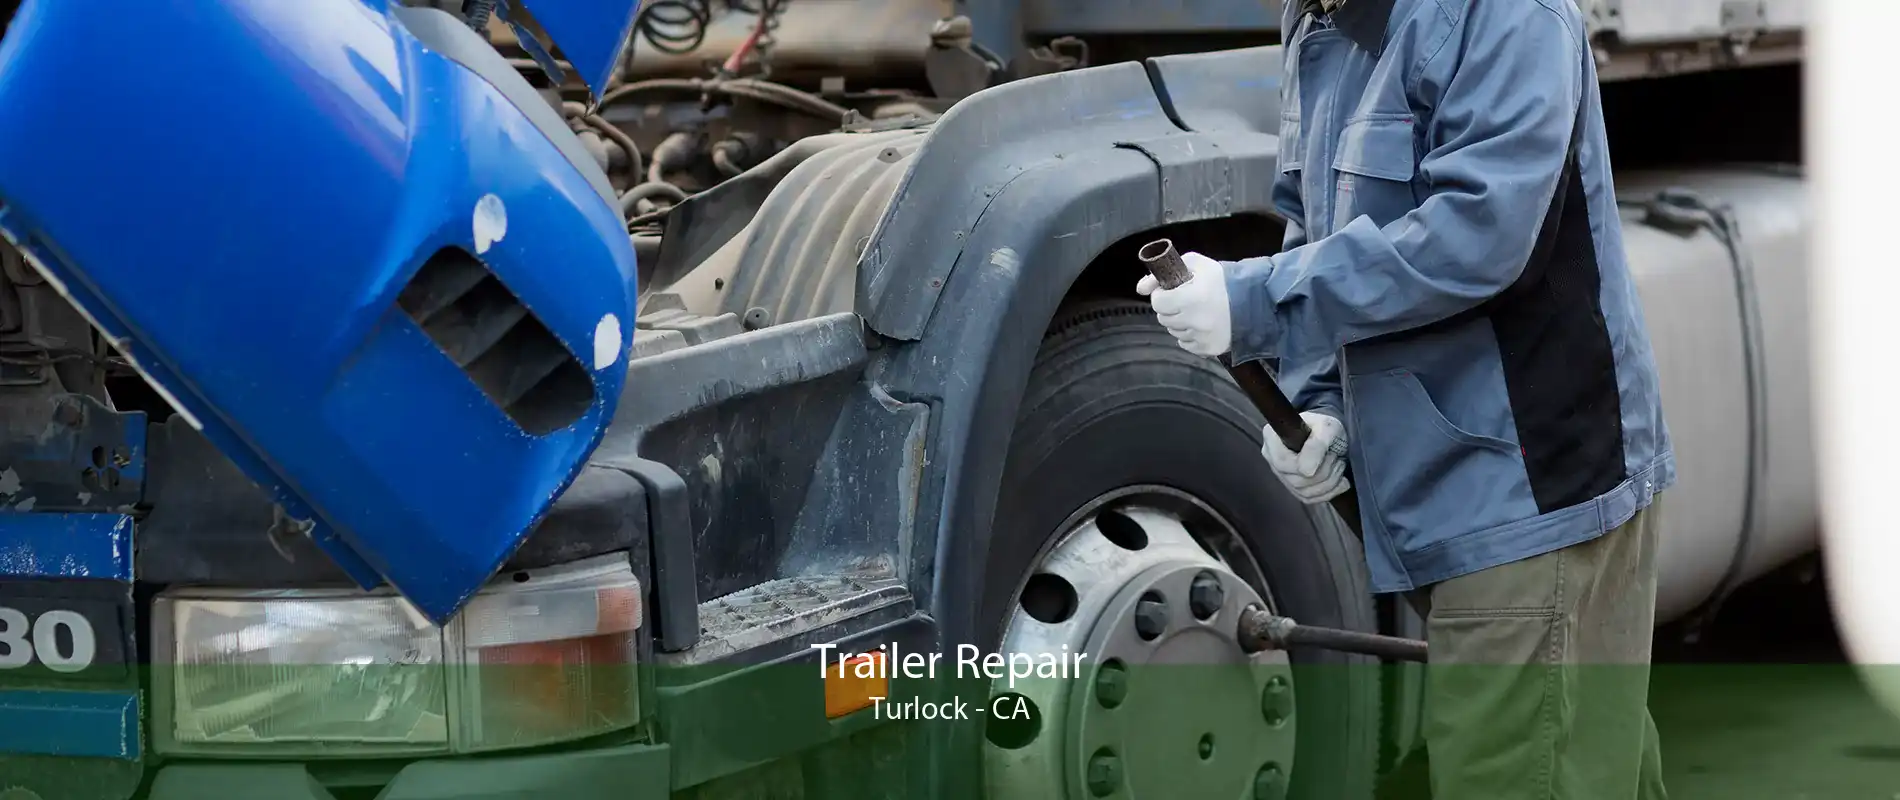 Trailer Repair Turlock - CA